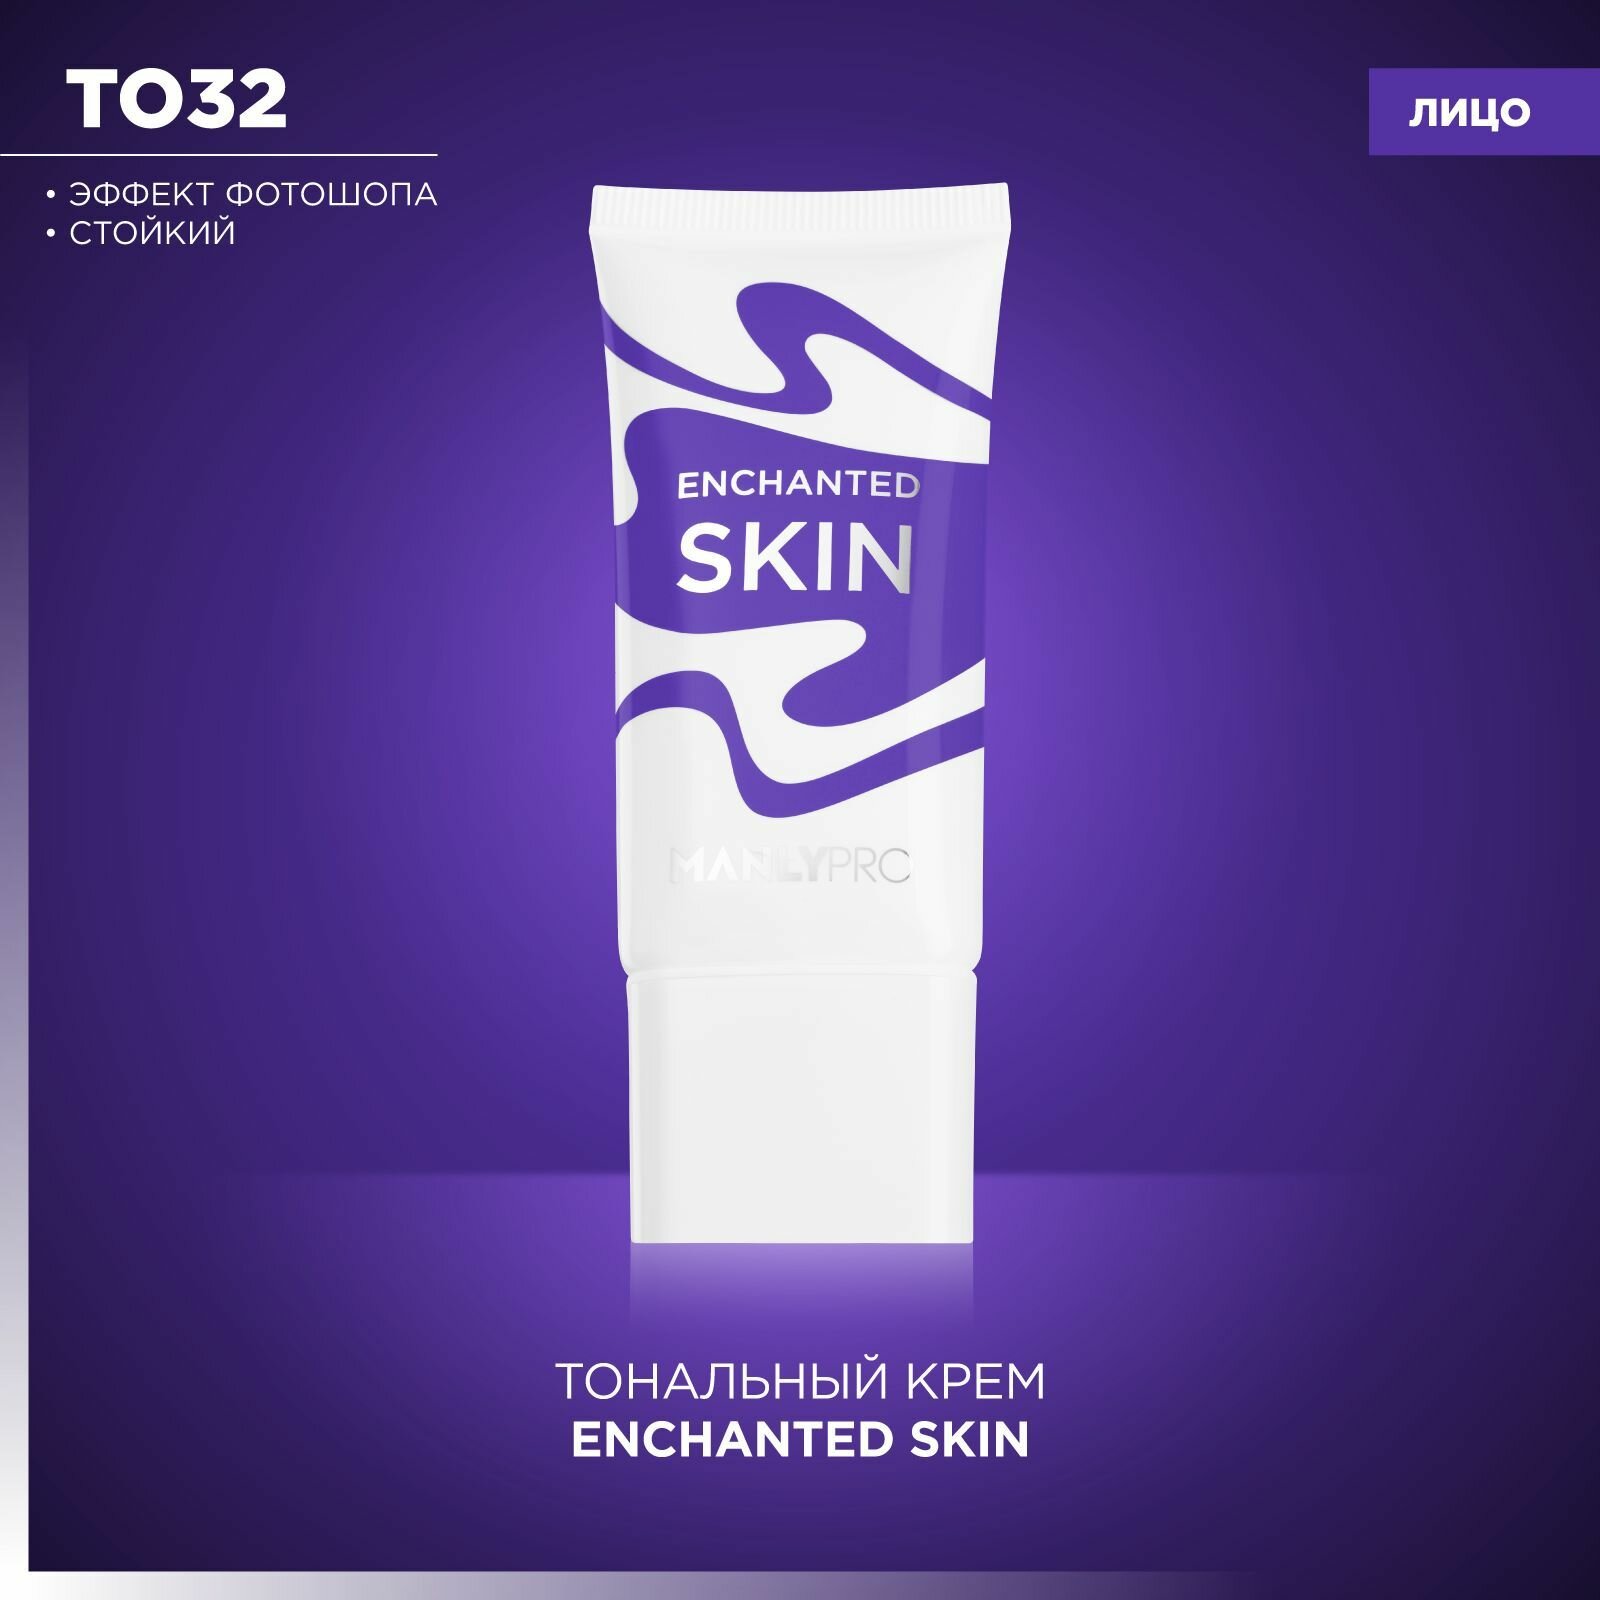 Тональный крем Enchanted Skin Manly PRO ТО32